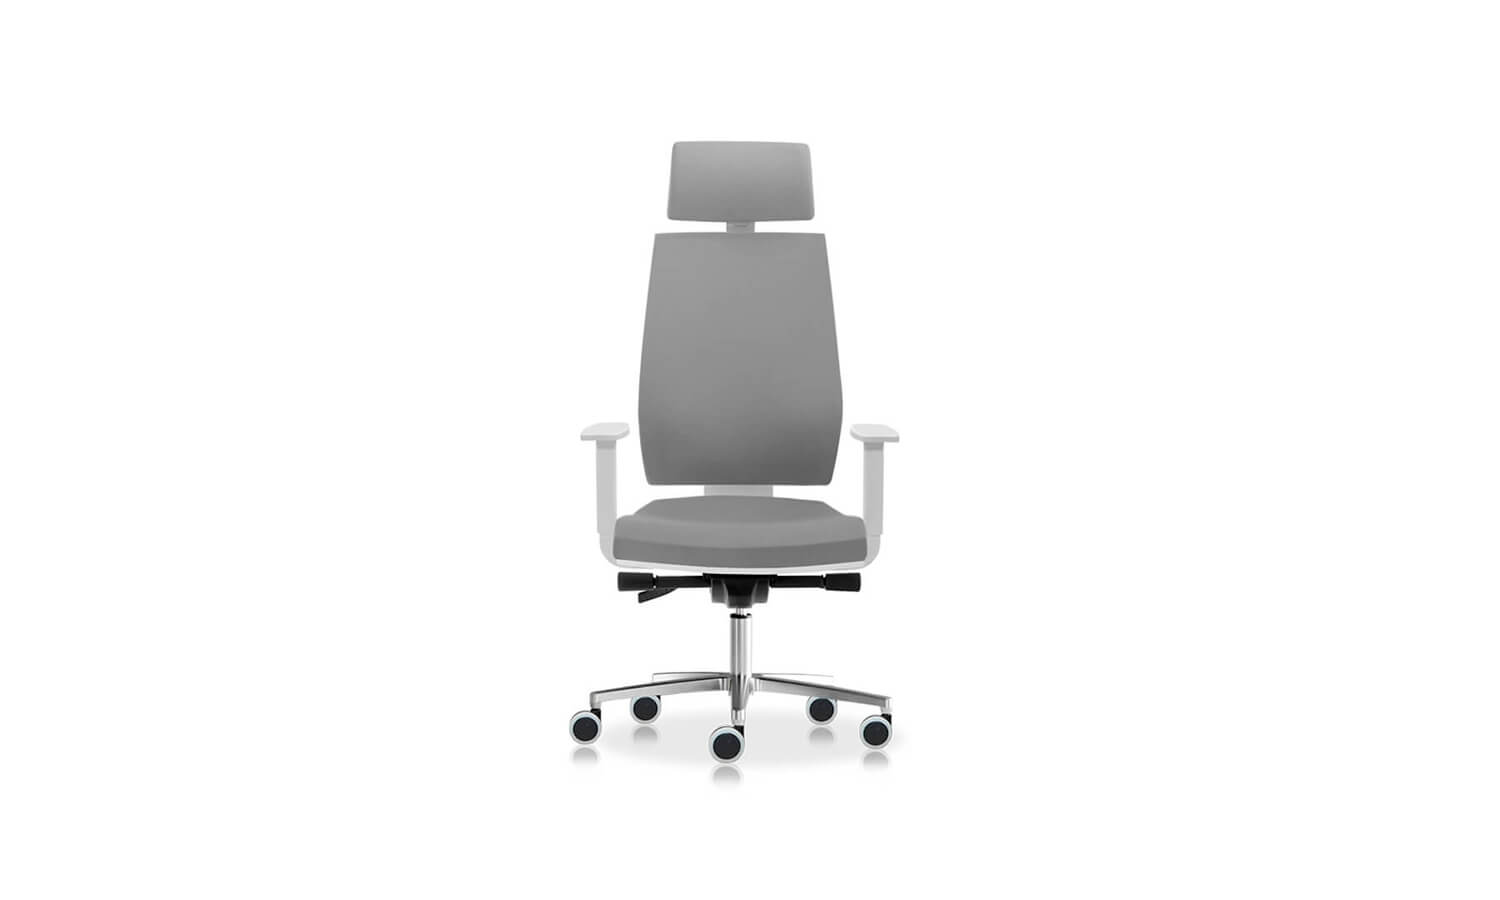 Sillas para escritorio cómodas - Linea Klass - Spazio Mobili